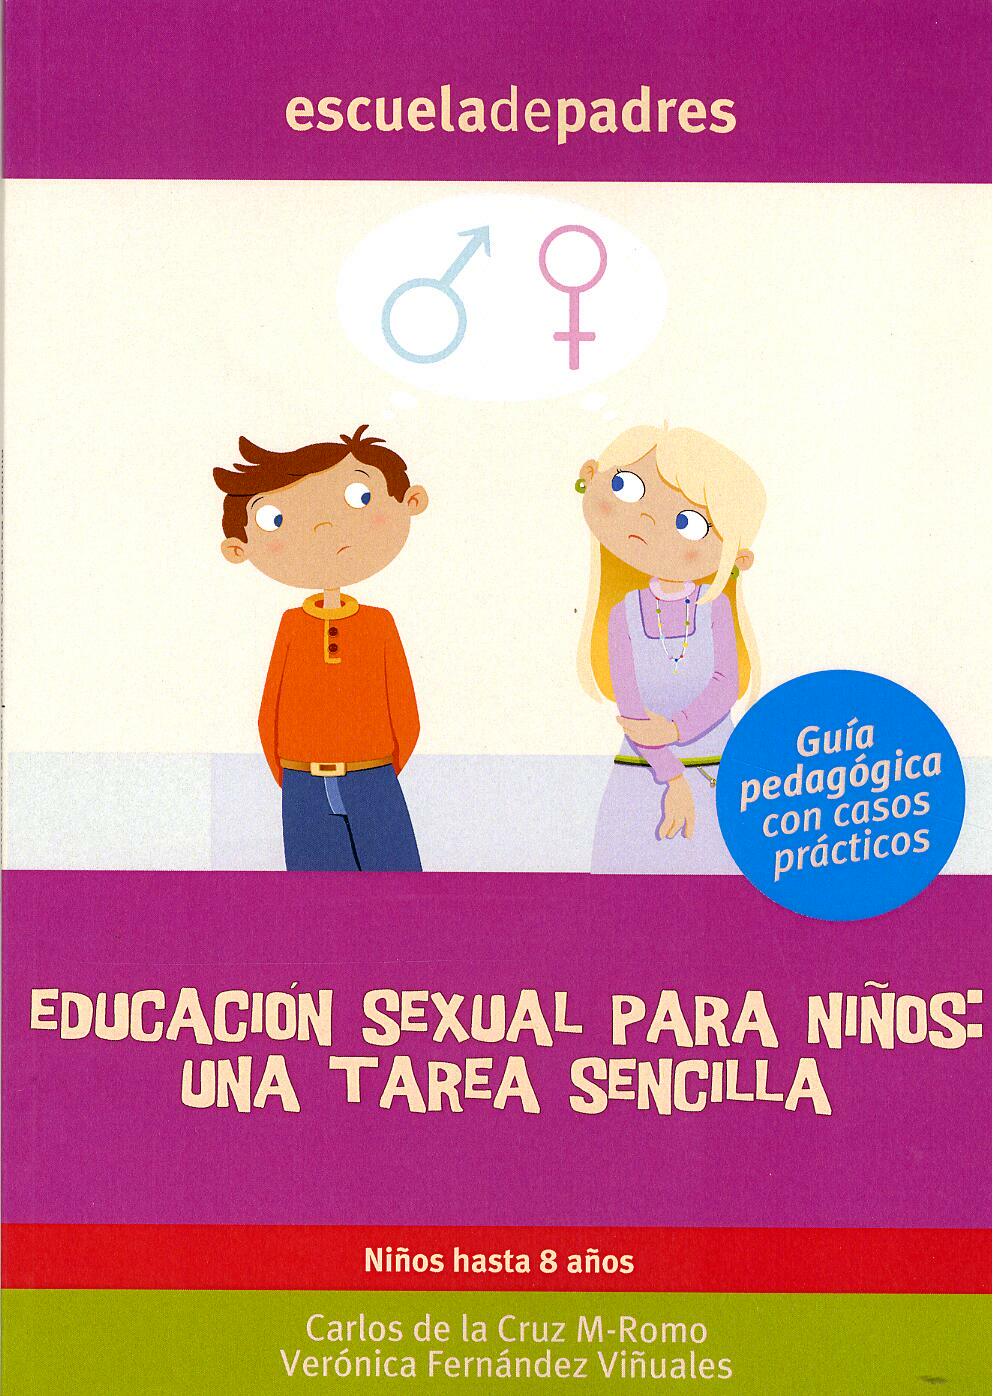 Libro de Educación Sexual para niñas y niños a partir de 8 años: Enseñar a  los niños de una manera divertida y apropiada para ellos. (Spanish Edition)